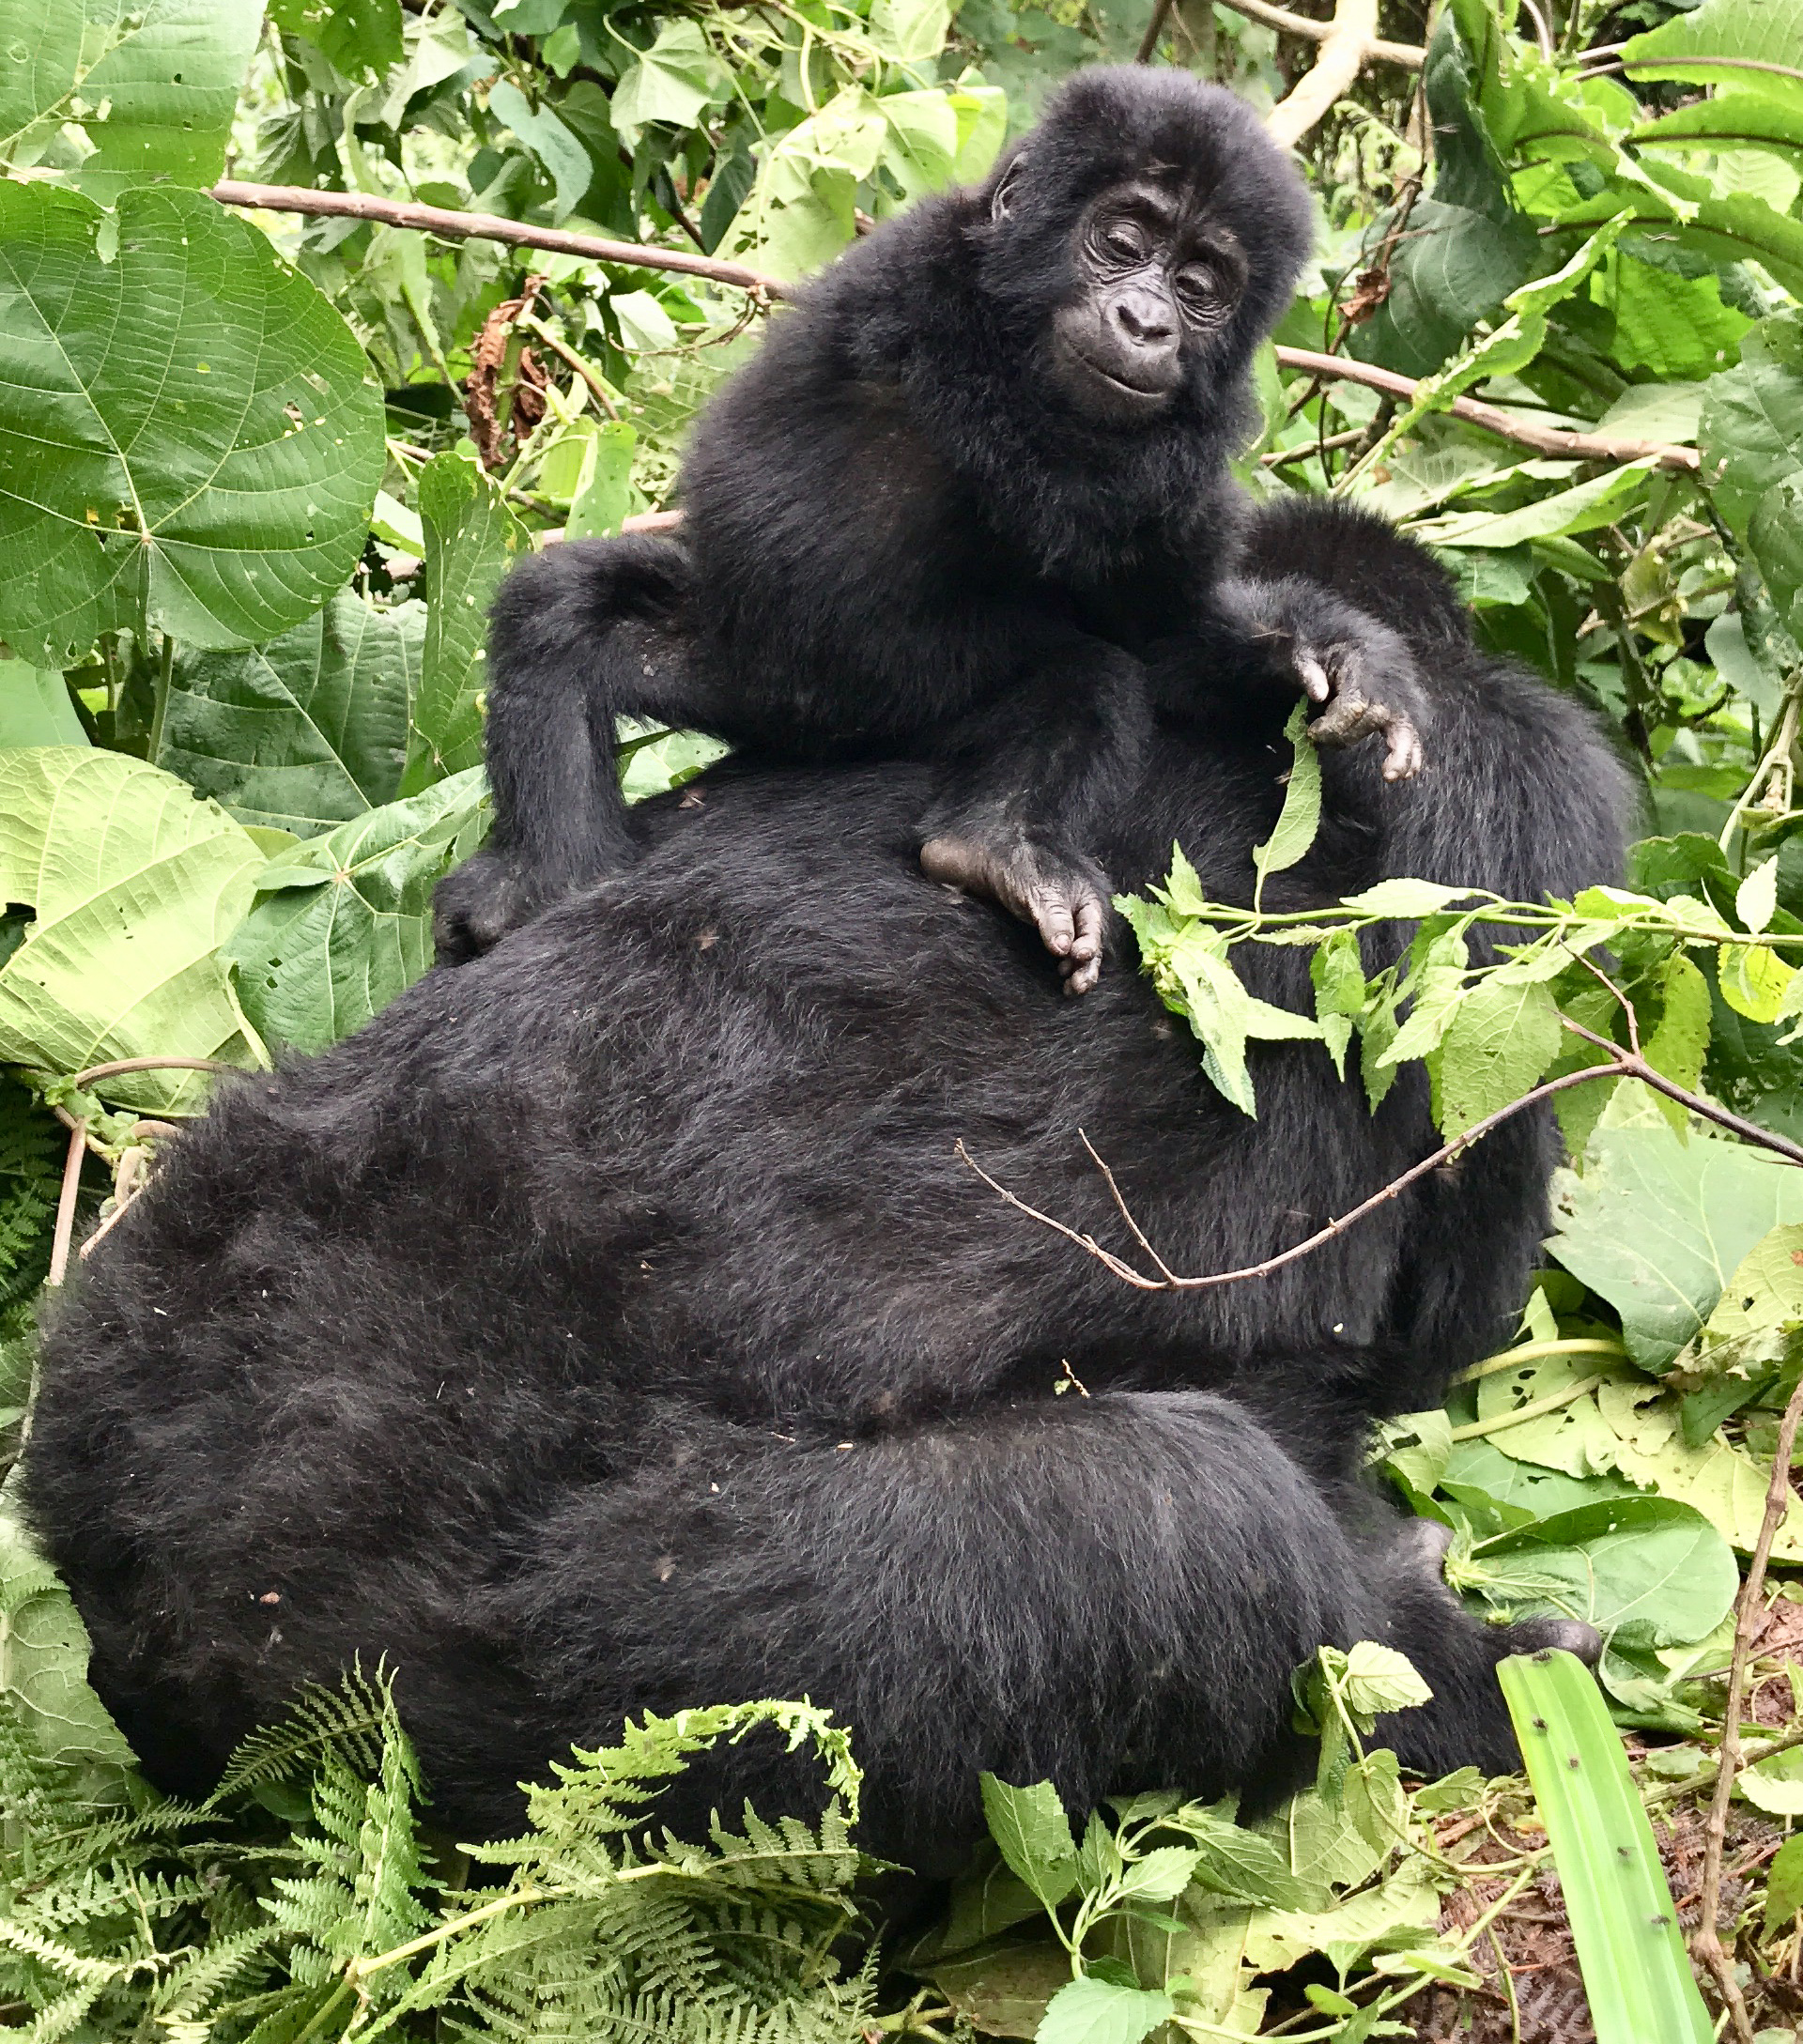 Finalmente fui a caminar por gorila en Uganda y valió la pena la espera - 13